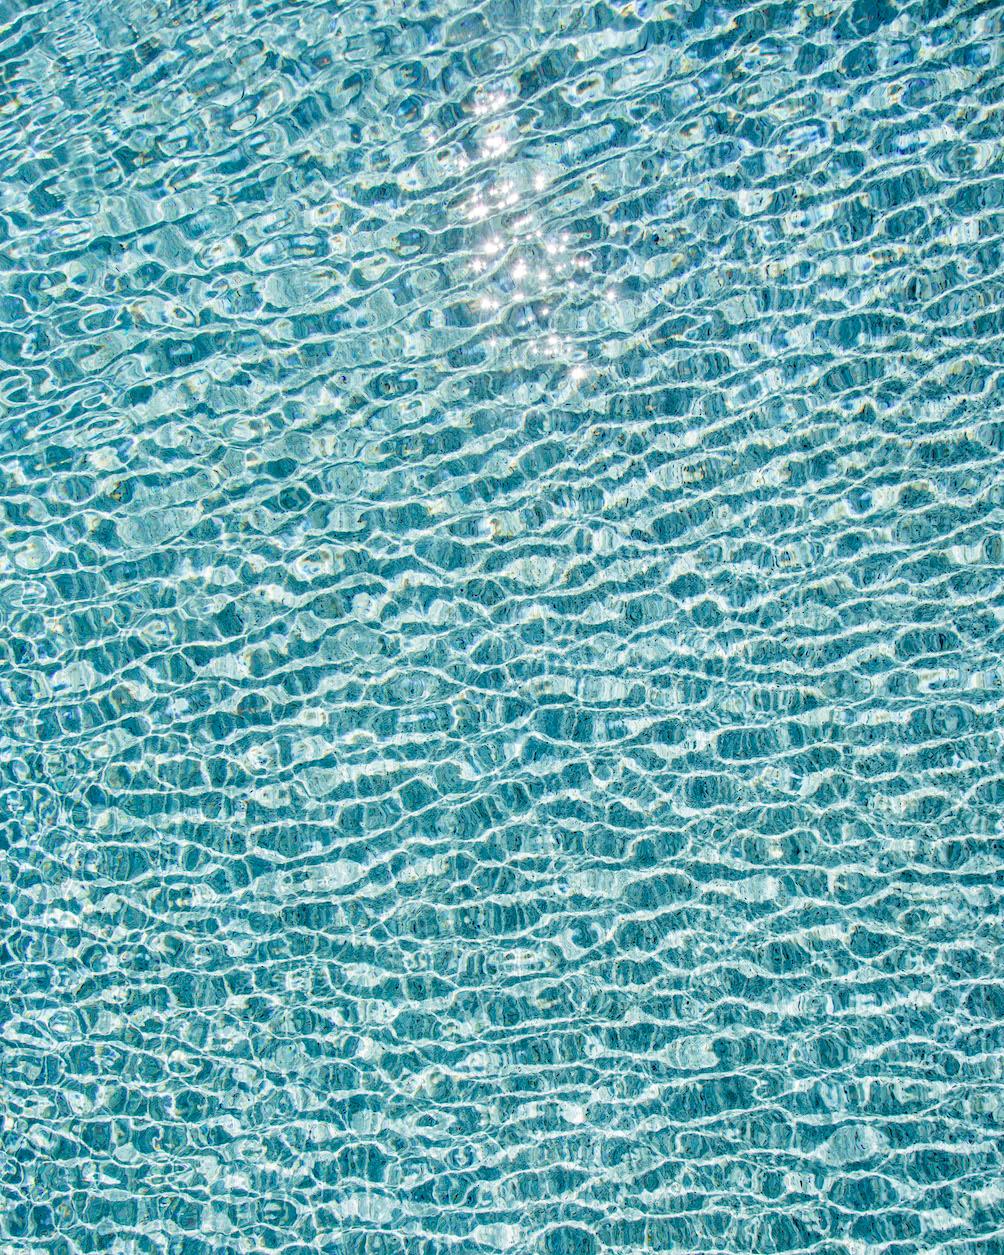 Abstract Photograph Erik Pawassar - H2O V - photographie grand format de reflets du soleil sur la surface de l'eau de la piscine